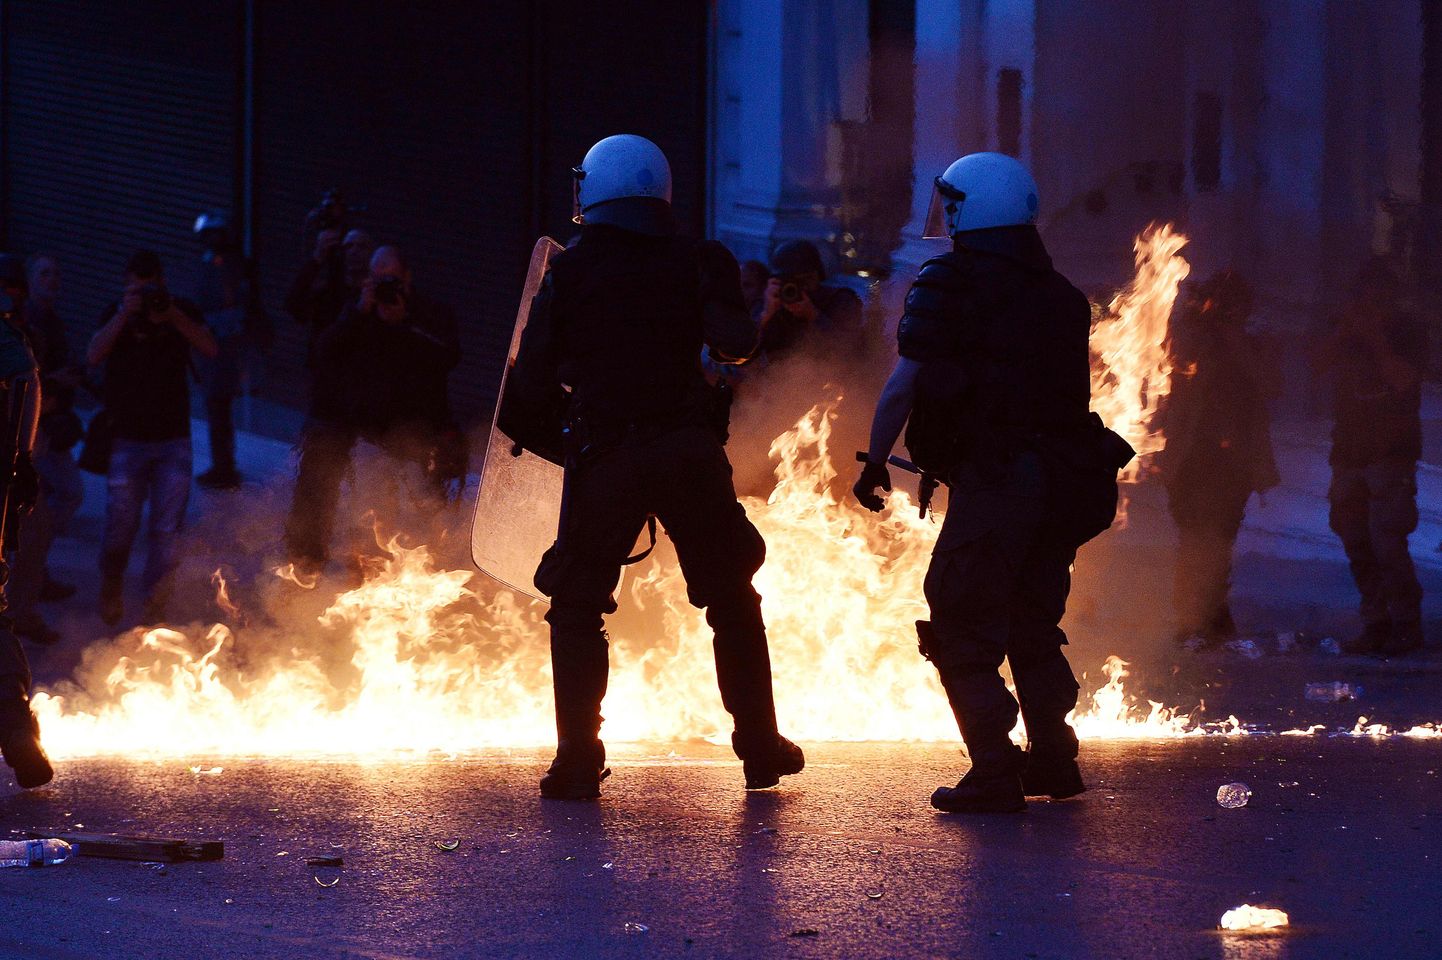 Kreeka politseinikke loobiti kivide ja süütepudelitega, korrakaitsjad vastasid pisargaasiga.